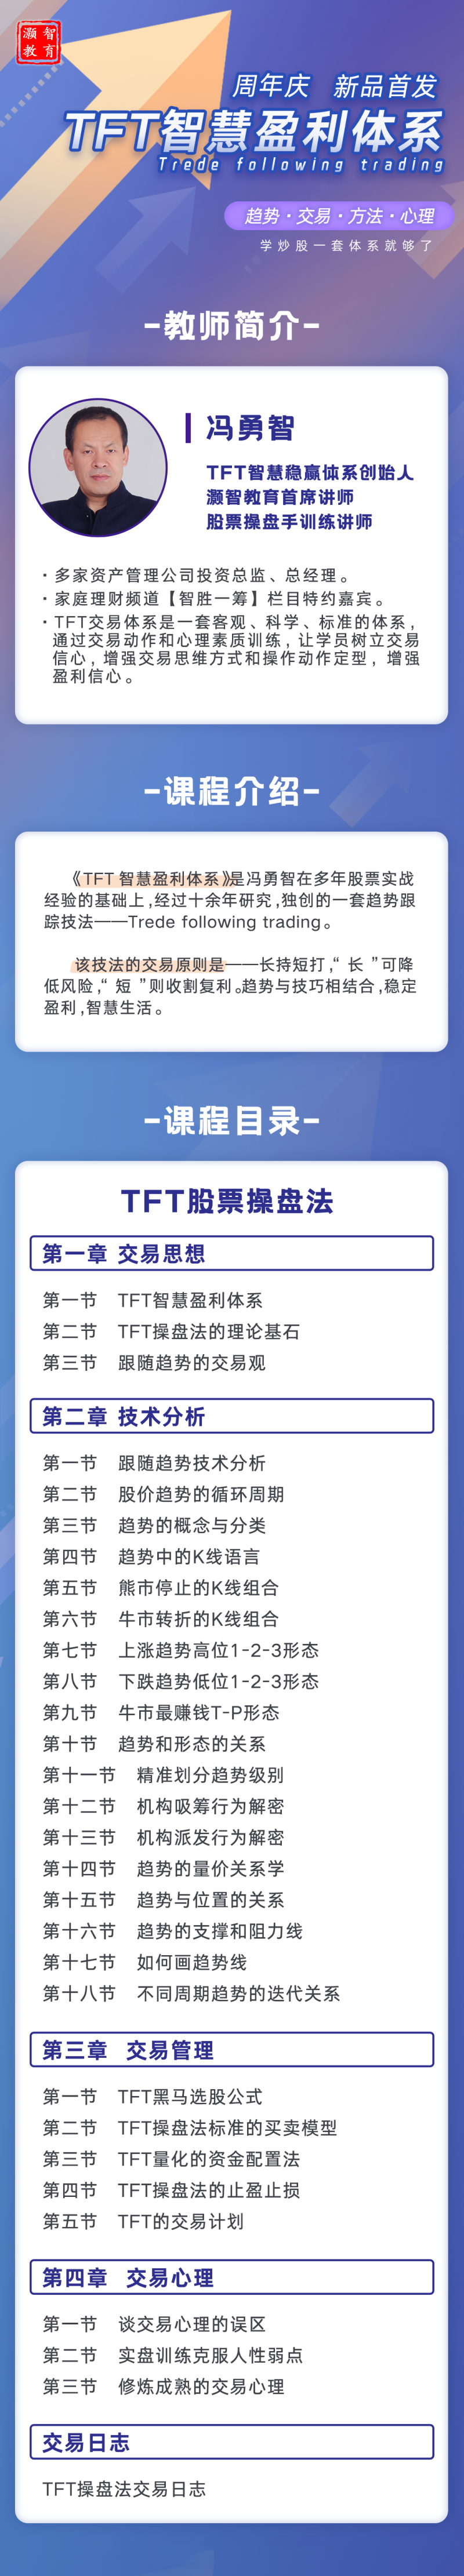  冯勇智——TFT智慧盈利体系趋势跟踪技法